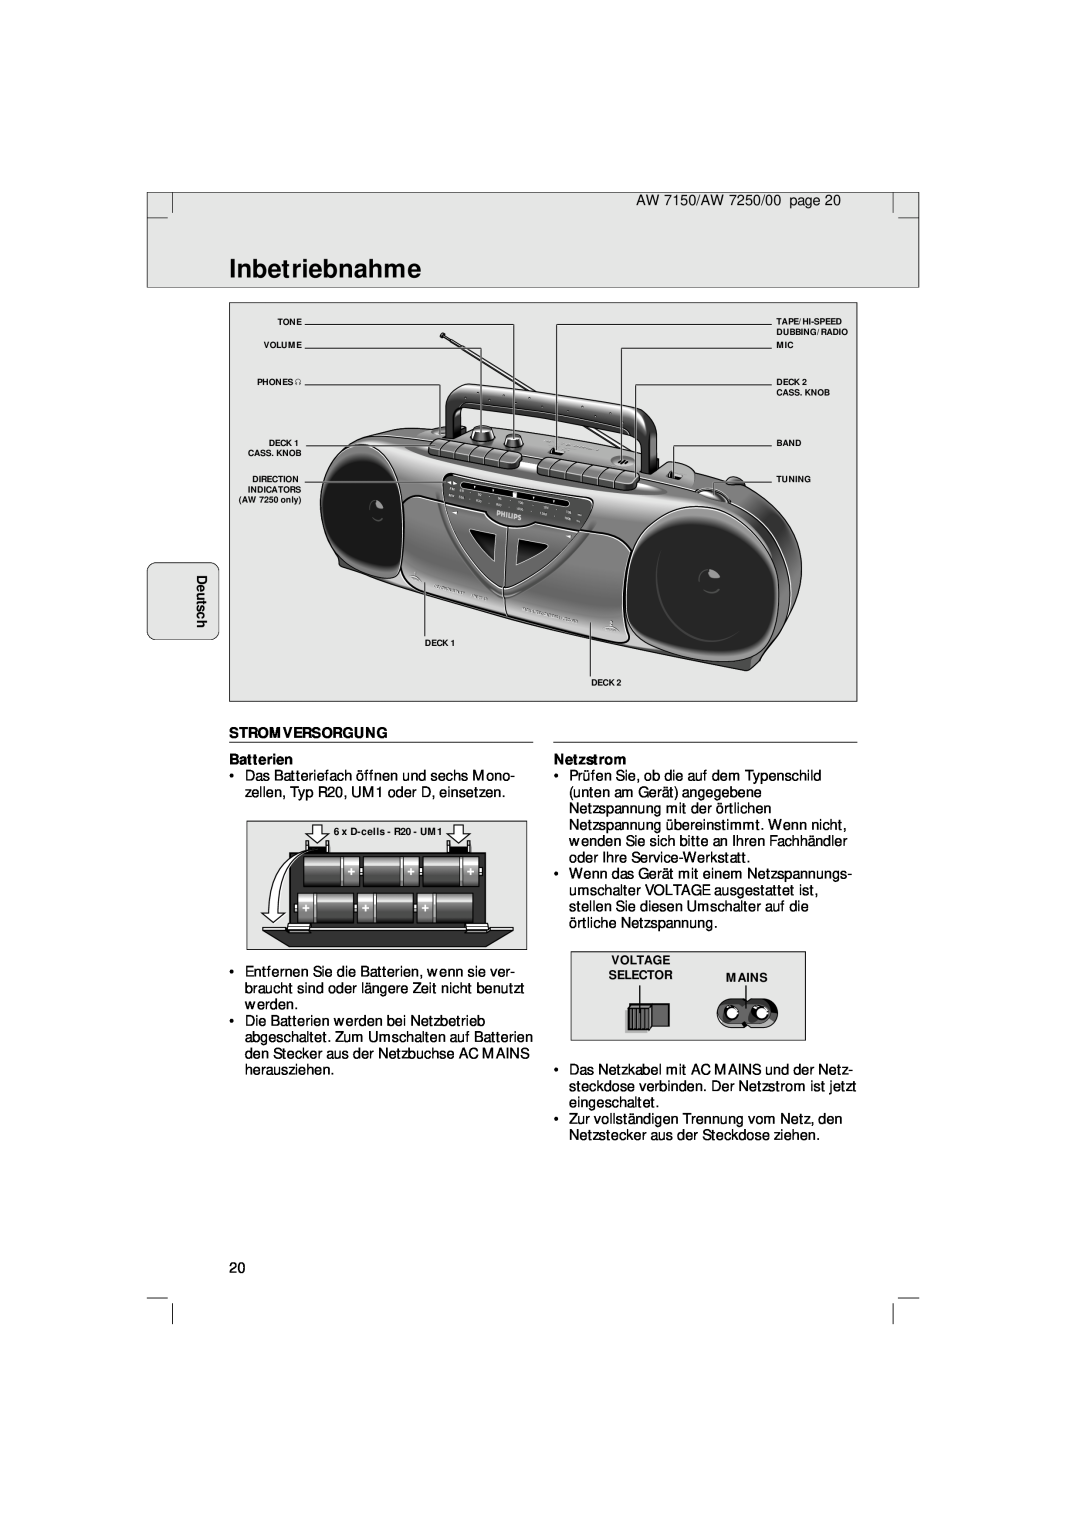 Philips AW 7150/04S, AW 7250/04S manual Inbetriebnahme, Deutsch, STROMVERSORGUNG Batterien, Netzstrom 